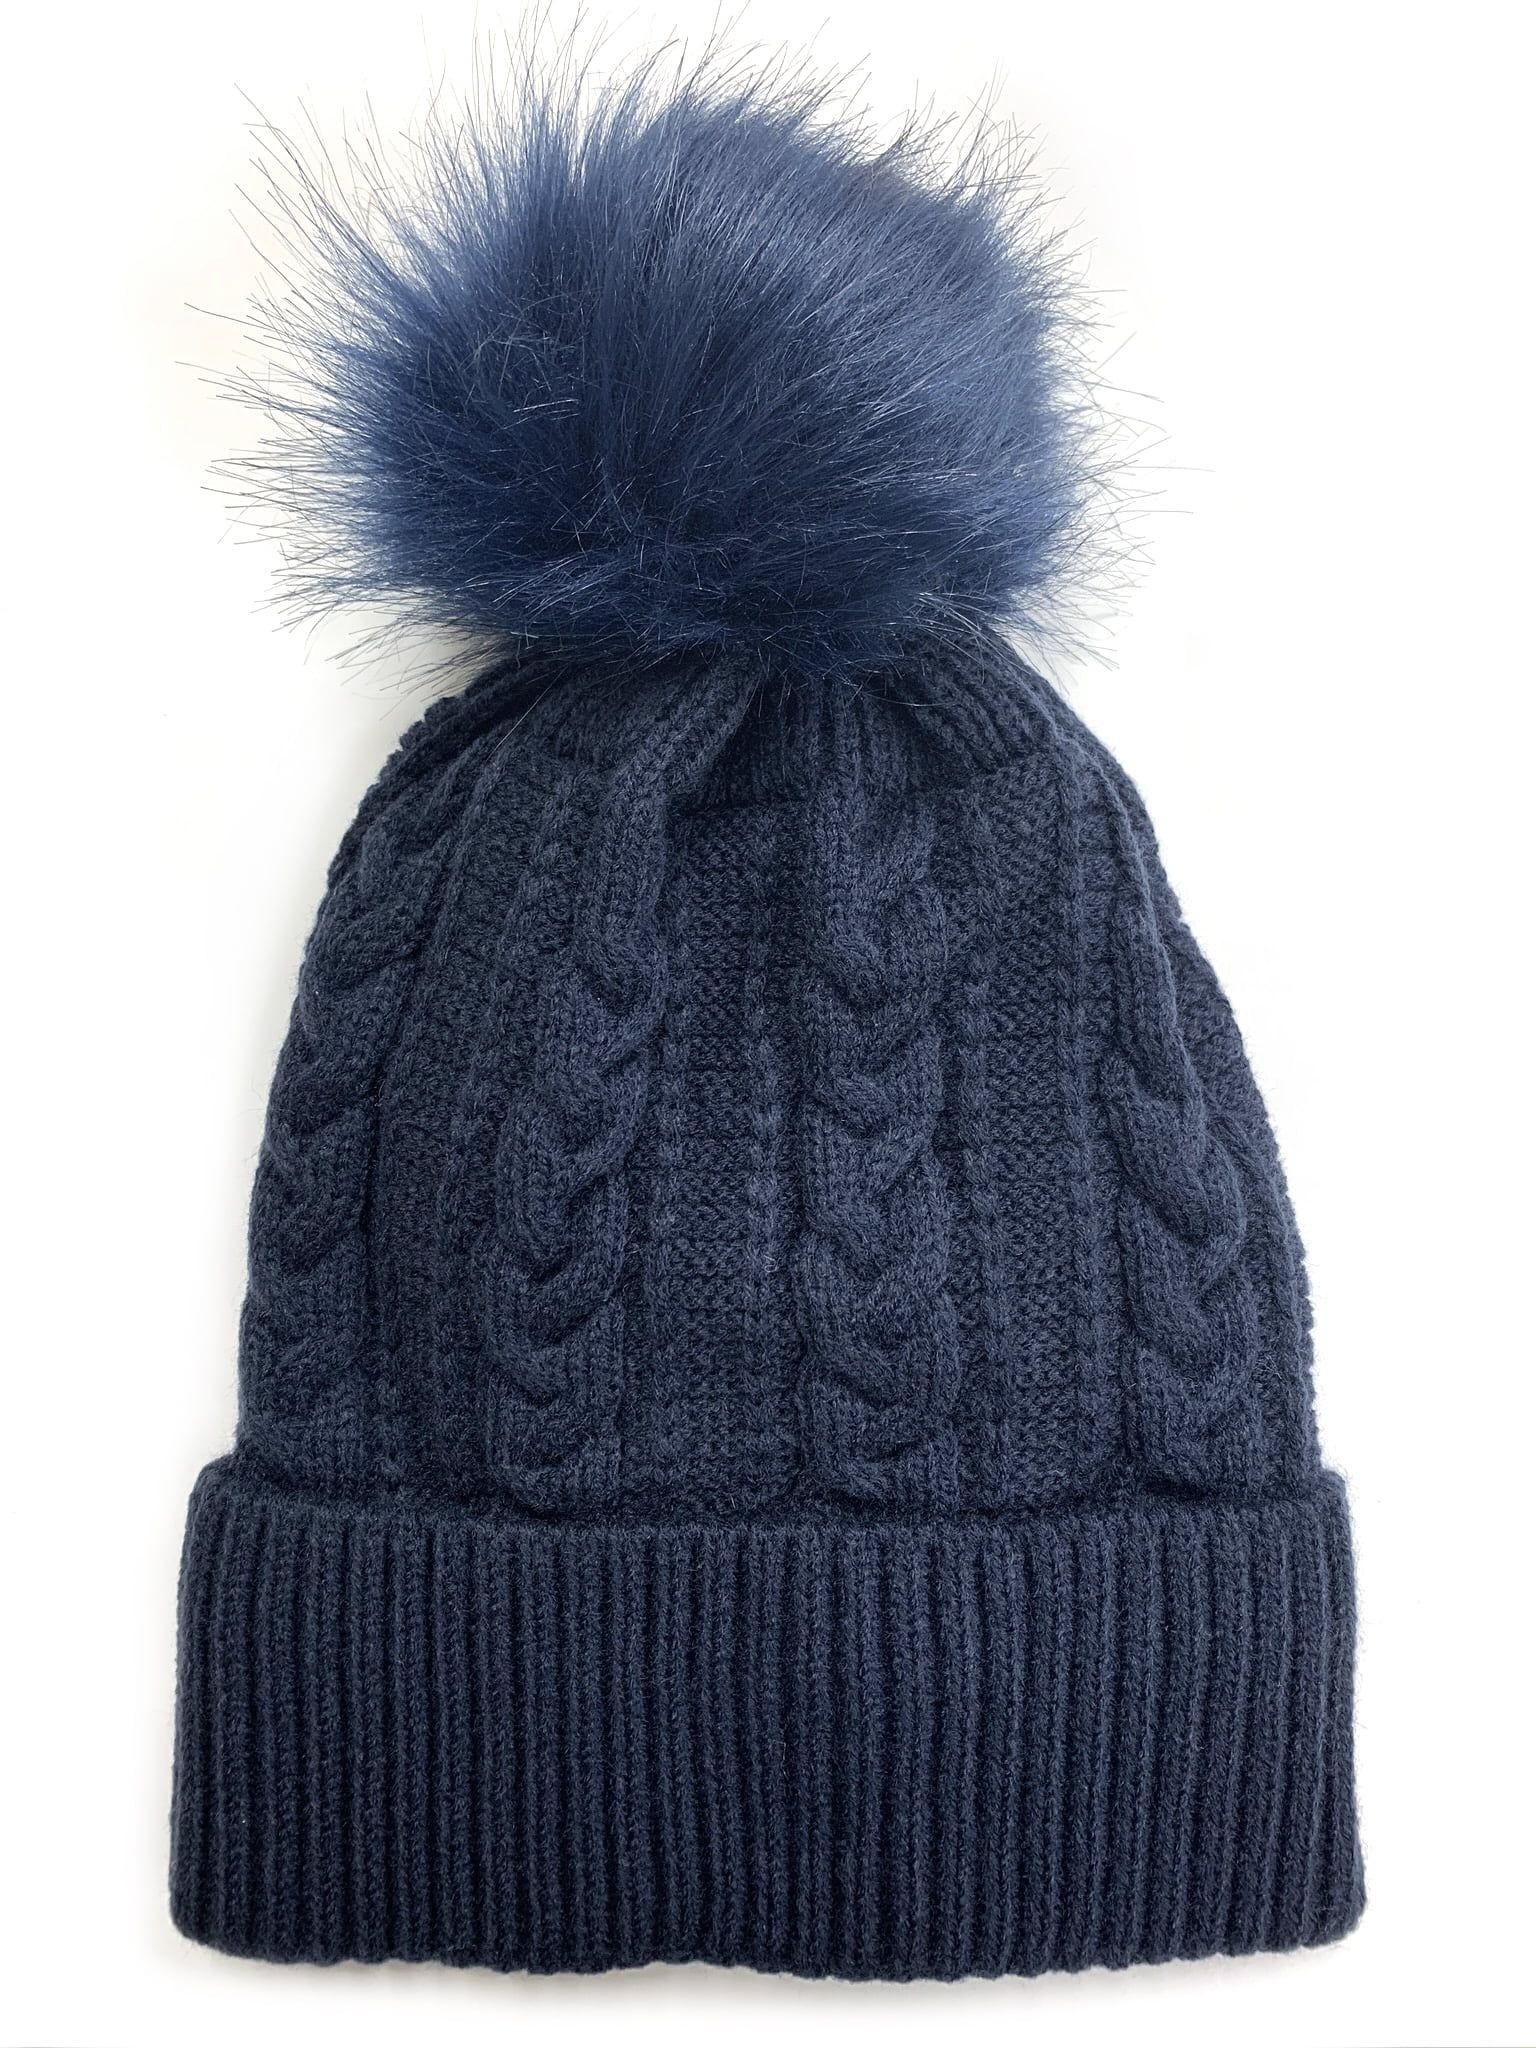 Newbee Fashion - Women Winter Faux Fur Pom Pom Beanie Hat with Warm Fleece Lined Thick Skull Ski ... | Walmart (US)